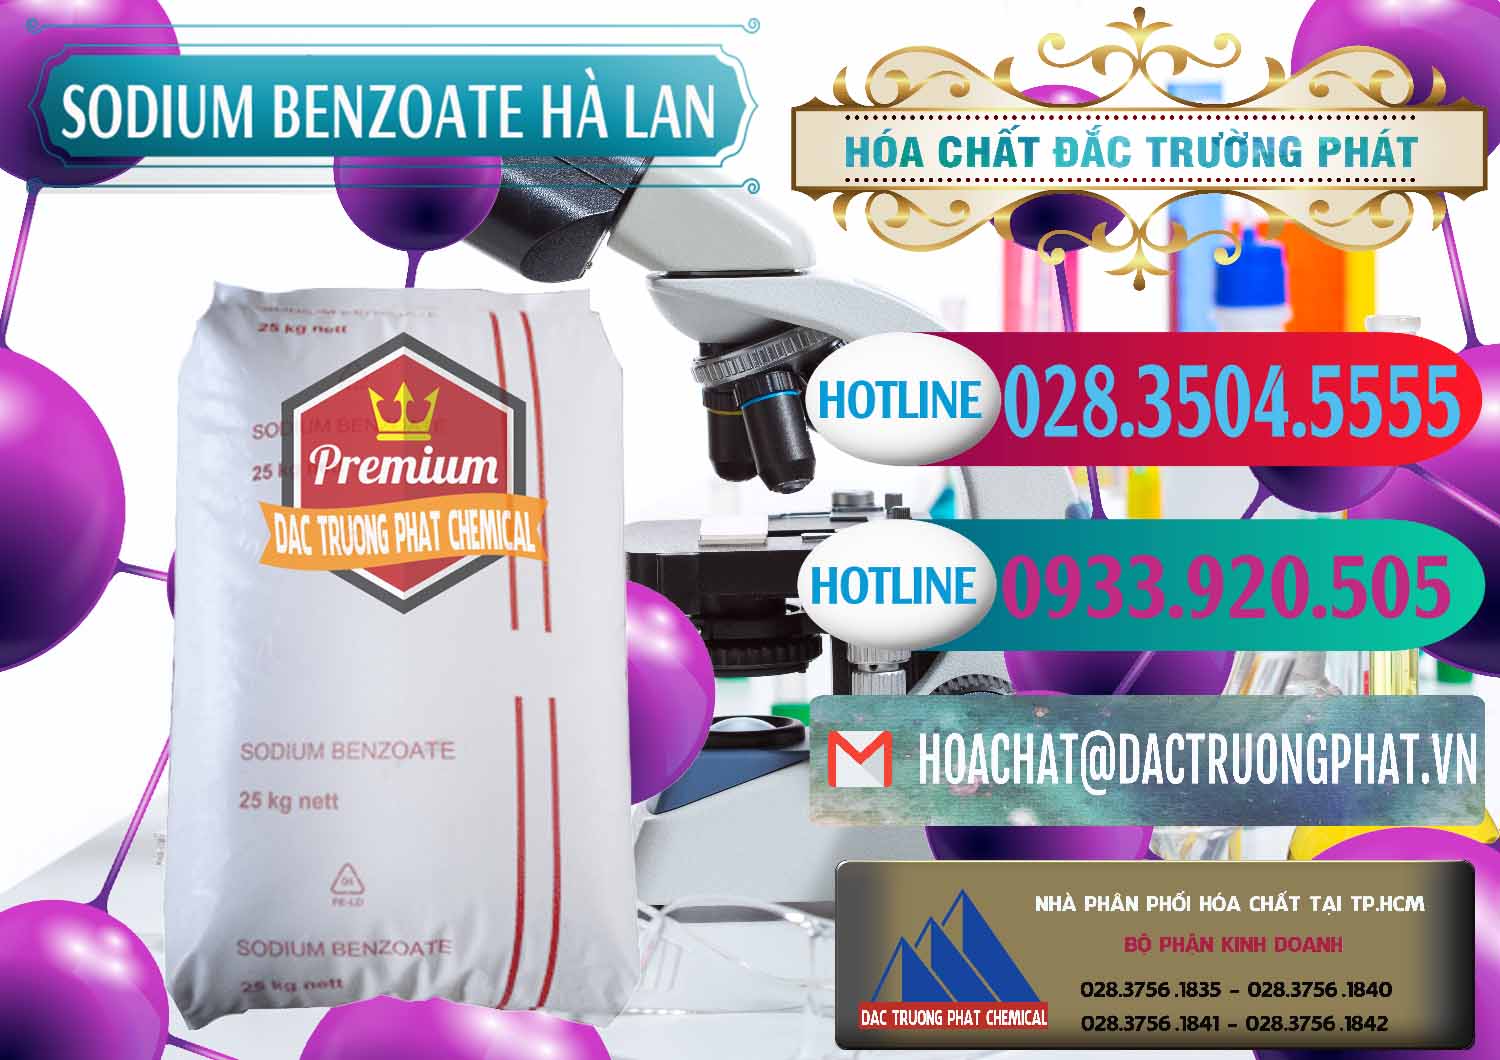 Cty nhập khẩu & bán Sodium Benzoate - Mốc Bột Chữ Cam Hà Lan Netherlands - 0360 - Phân phối & kinh doanh hóa chất tại TP.HCM - truongphat.vn